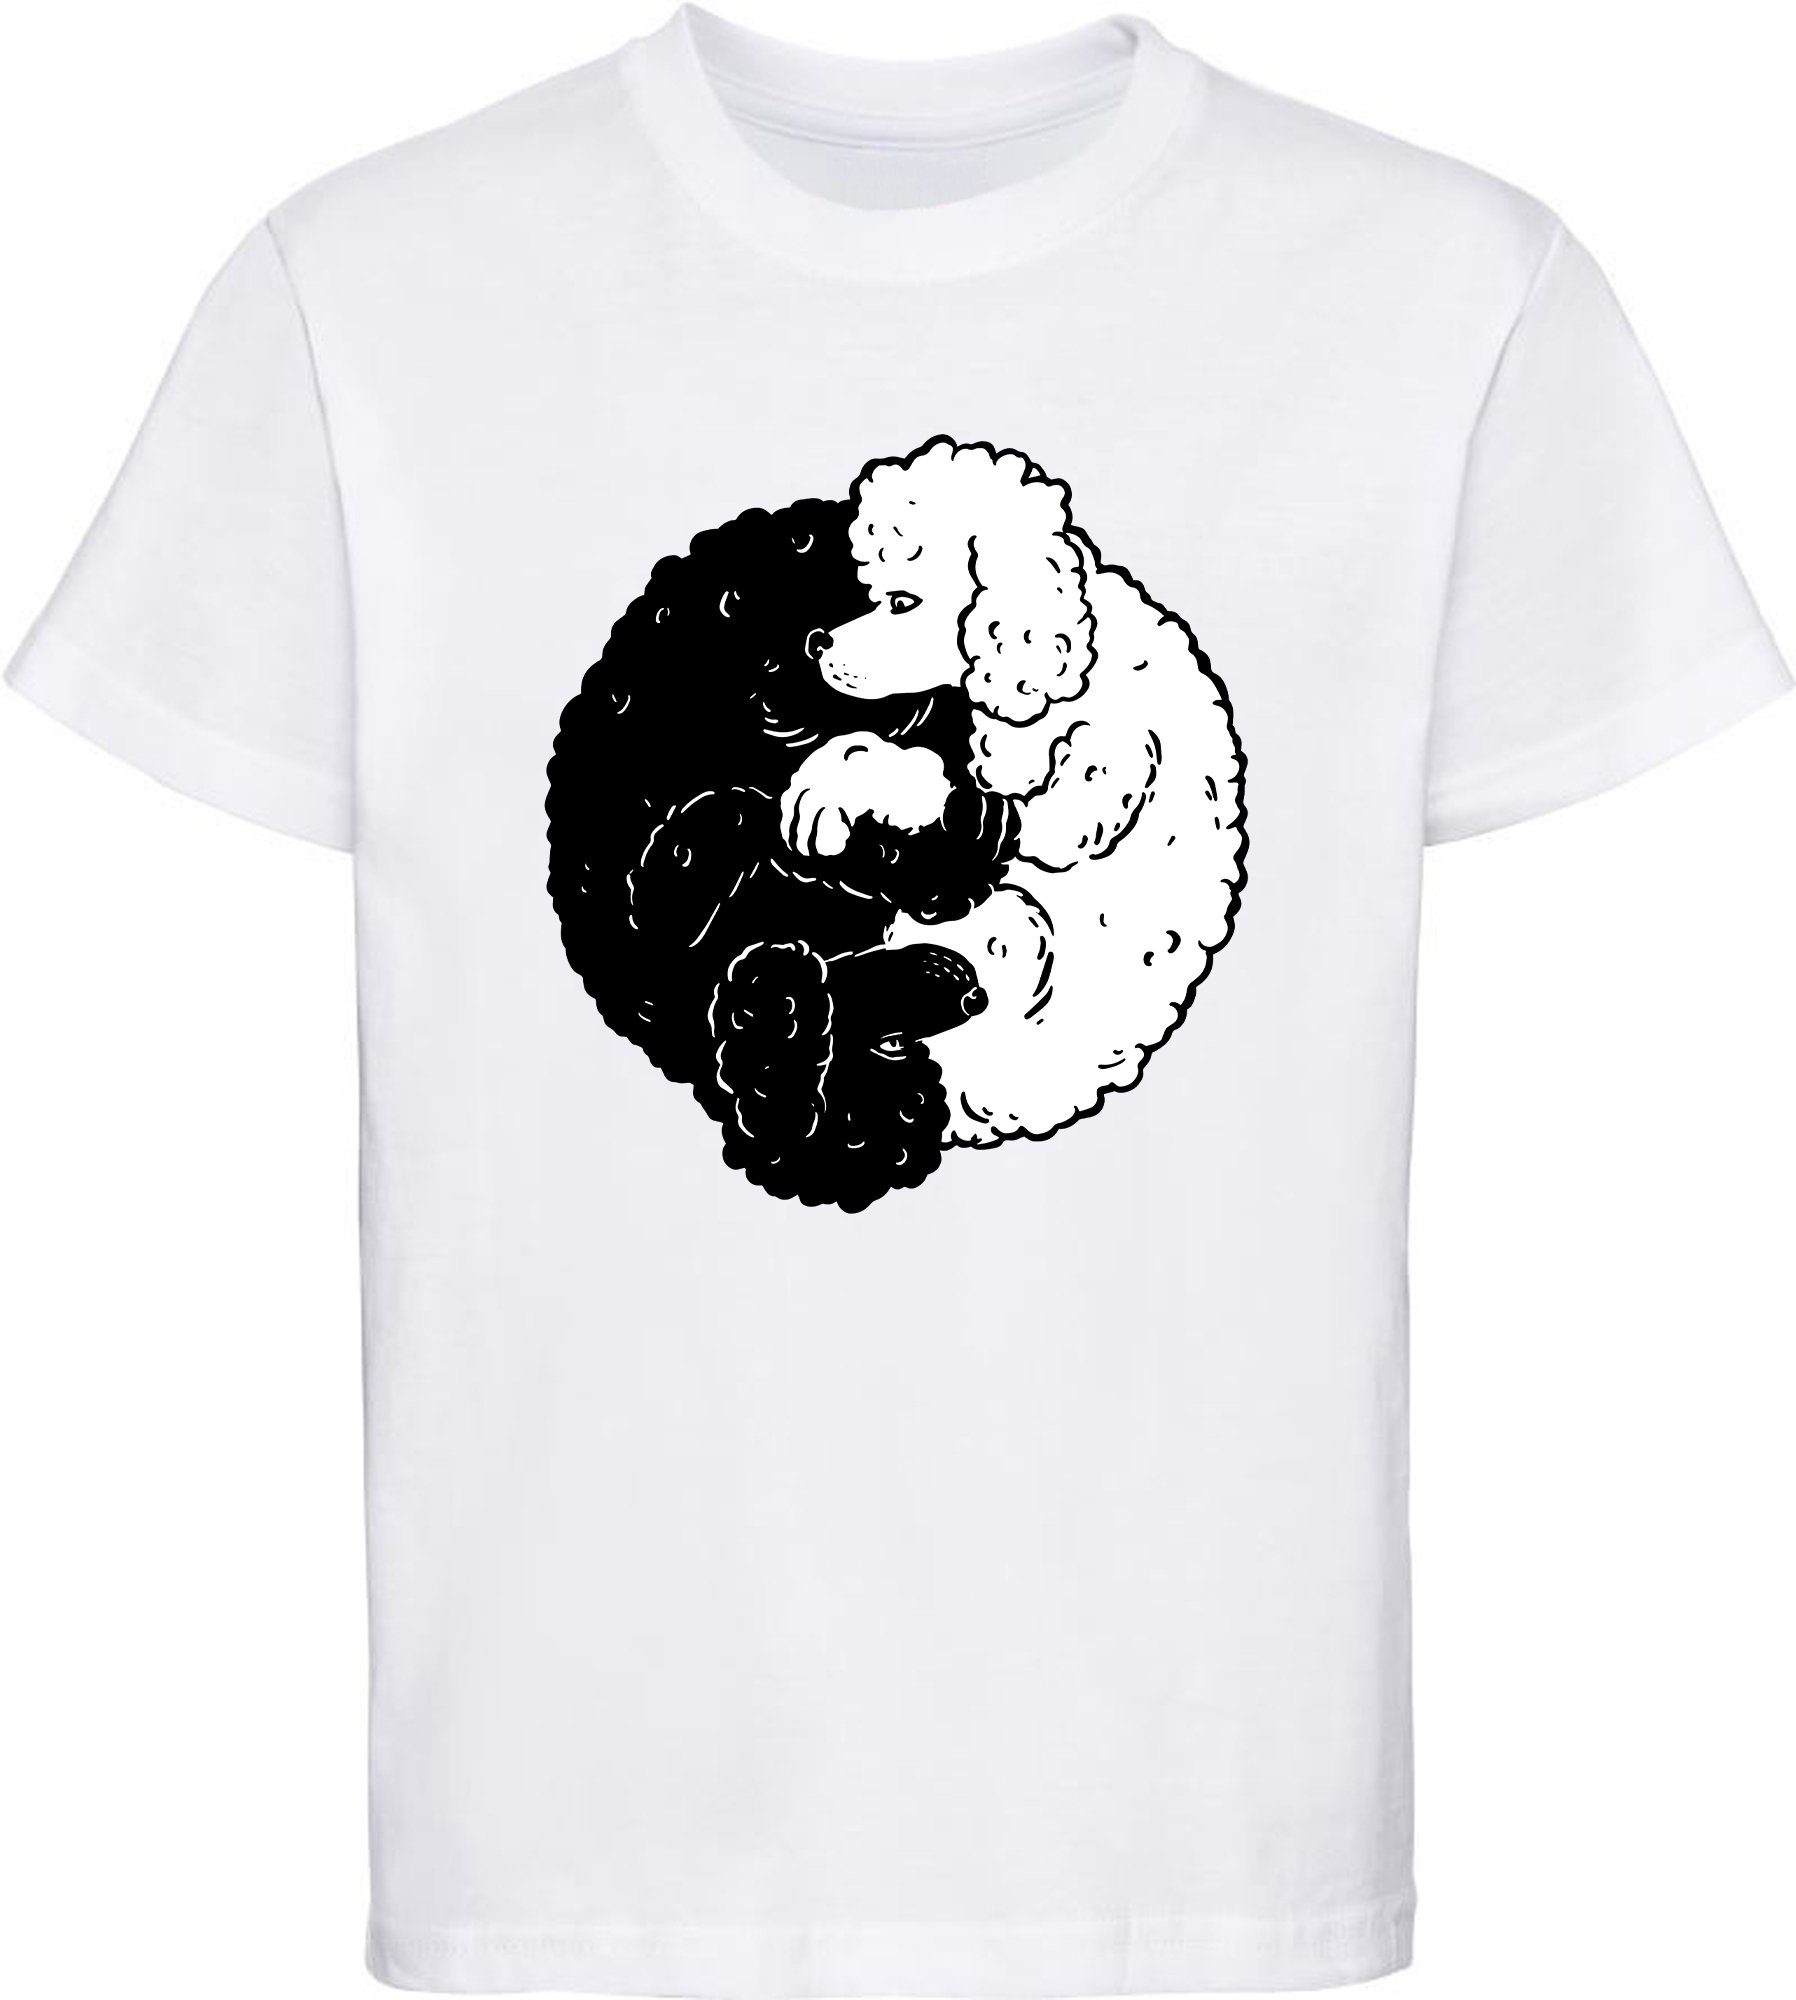 MyDesign24 Print-Shirt Kinder Hunde T-Shirt bedruckt - Yin Yang Pudel Baumwollshirt mit Aufdruck, i235 weiss